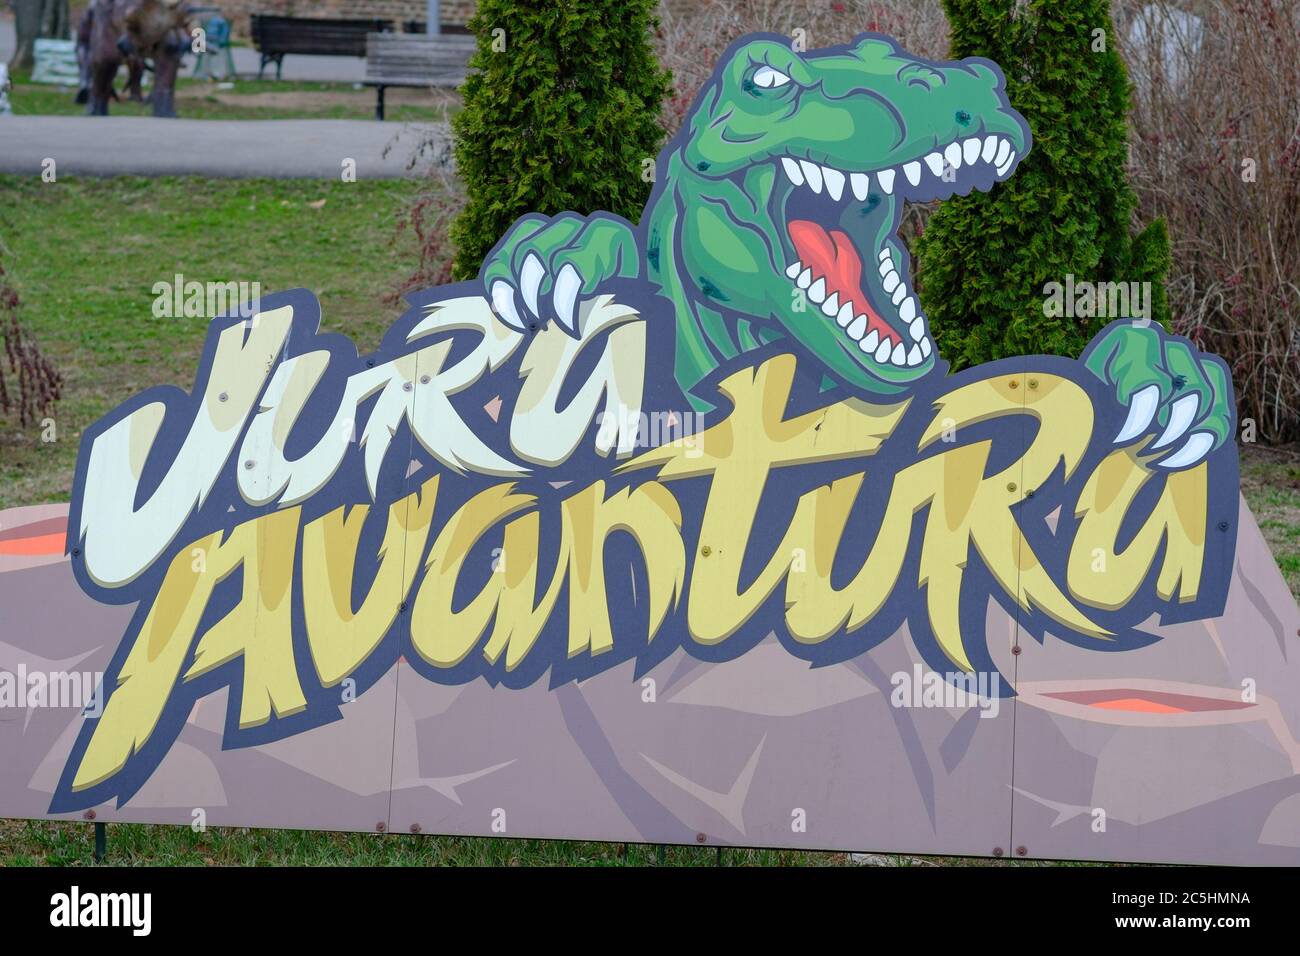 Belgrade / Serbie - 3 mars 2019 : Parc à thème Jurassique Adventure dinosaures à la forteresse de Belgrade Kalemegdan à Belgrade Serbie Banque D'Images